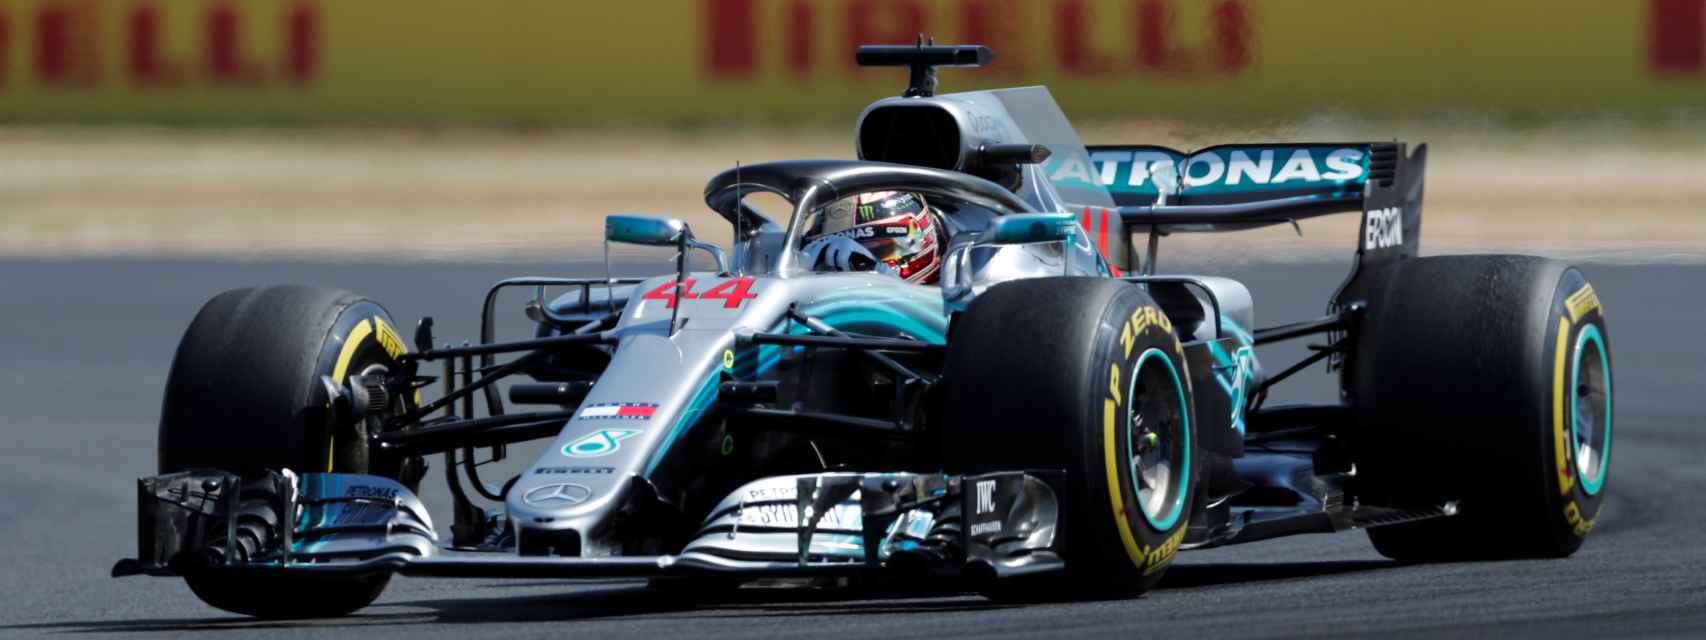 Hamilton durante el Gran Premio de Gran Bretaña de Fórmula 1.